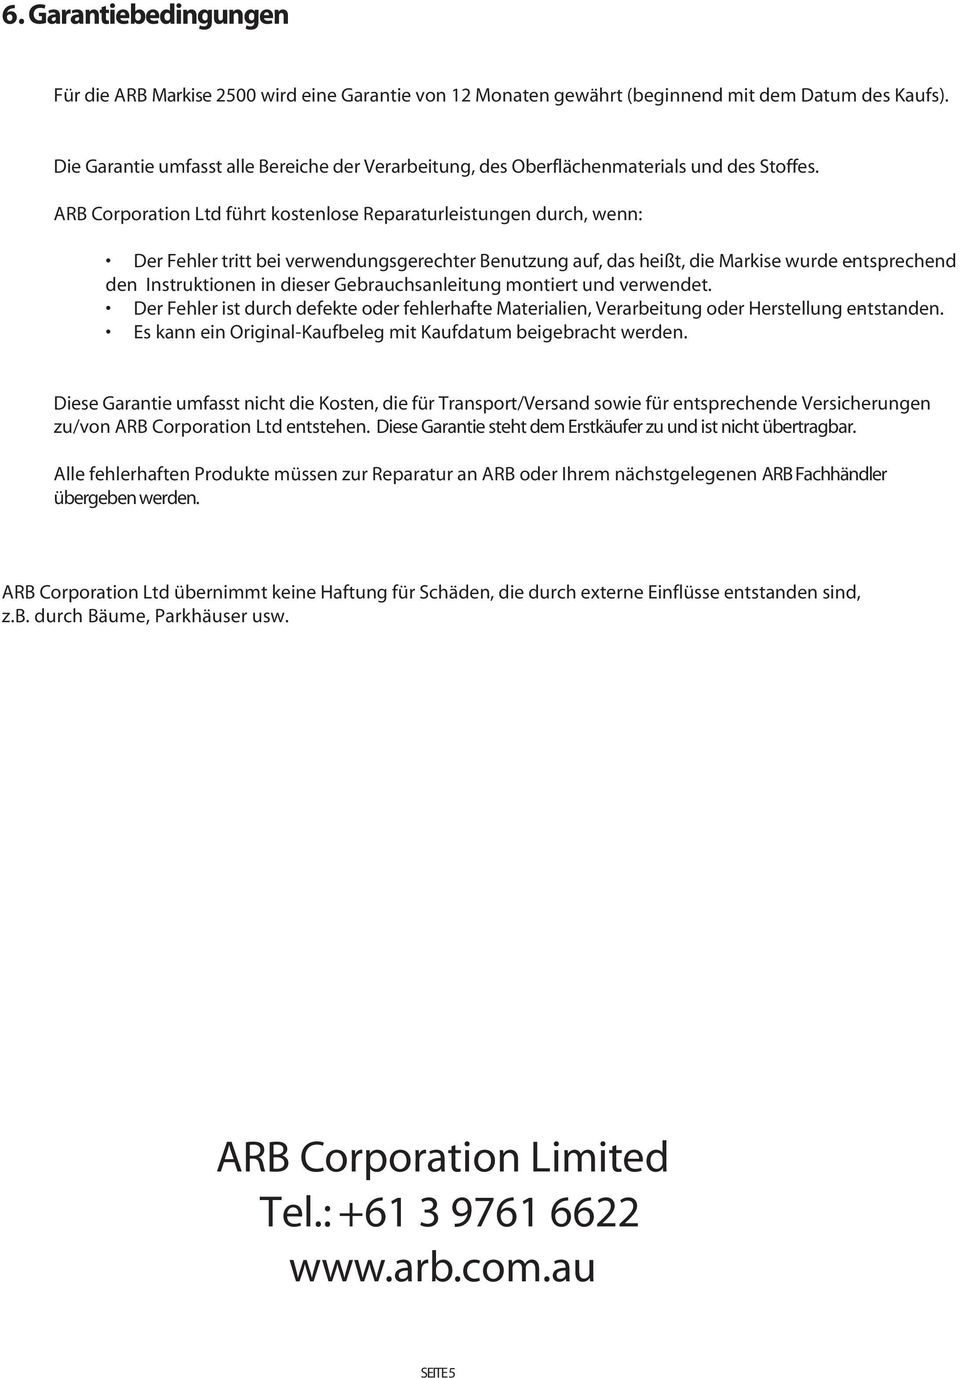 ARB Corporation Ltd führt kostenlose Reparaturleistungen durch, wenn: Der Fehler tritt bei verwendungsgerechter Benutzung auf, das heißt, die Markise wurde entsprechend - den Instruktionen in dieser